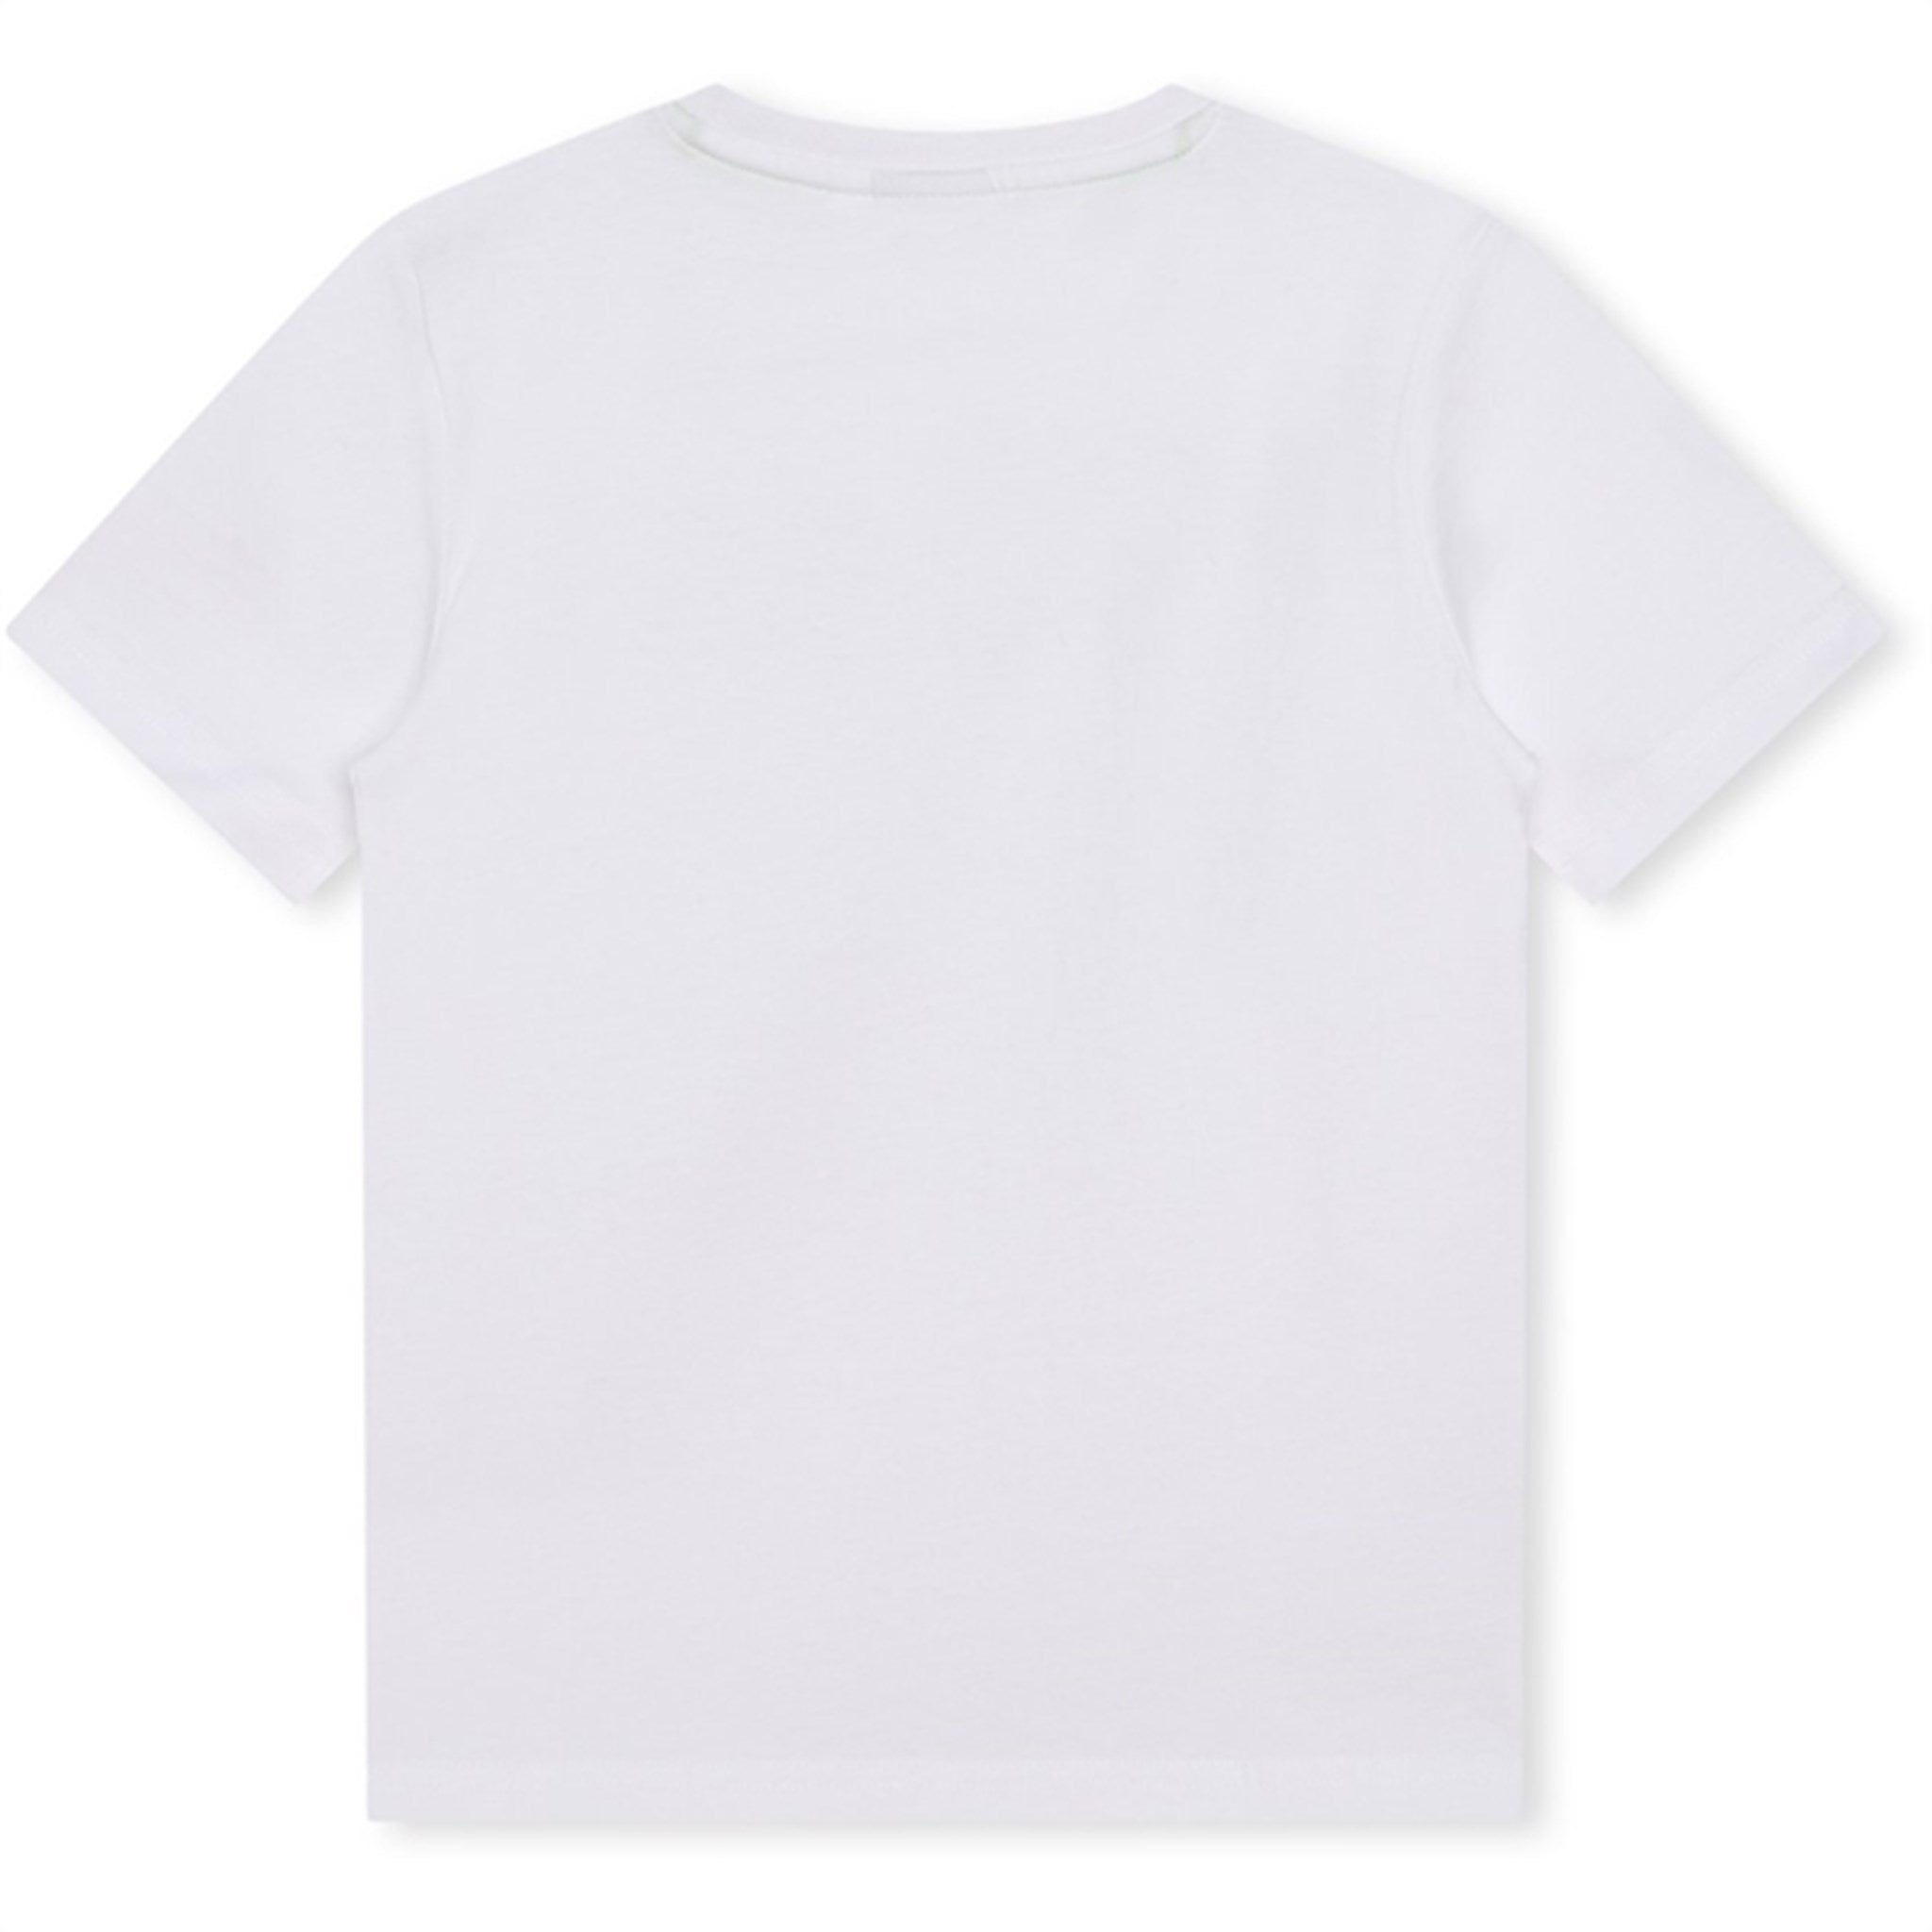 Hugo Boss T-shirt White 2